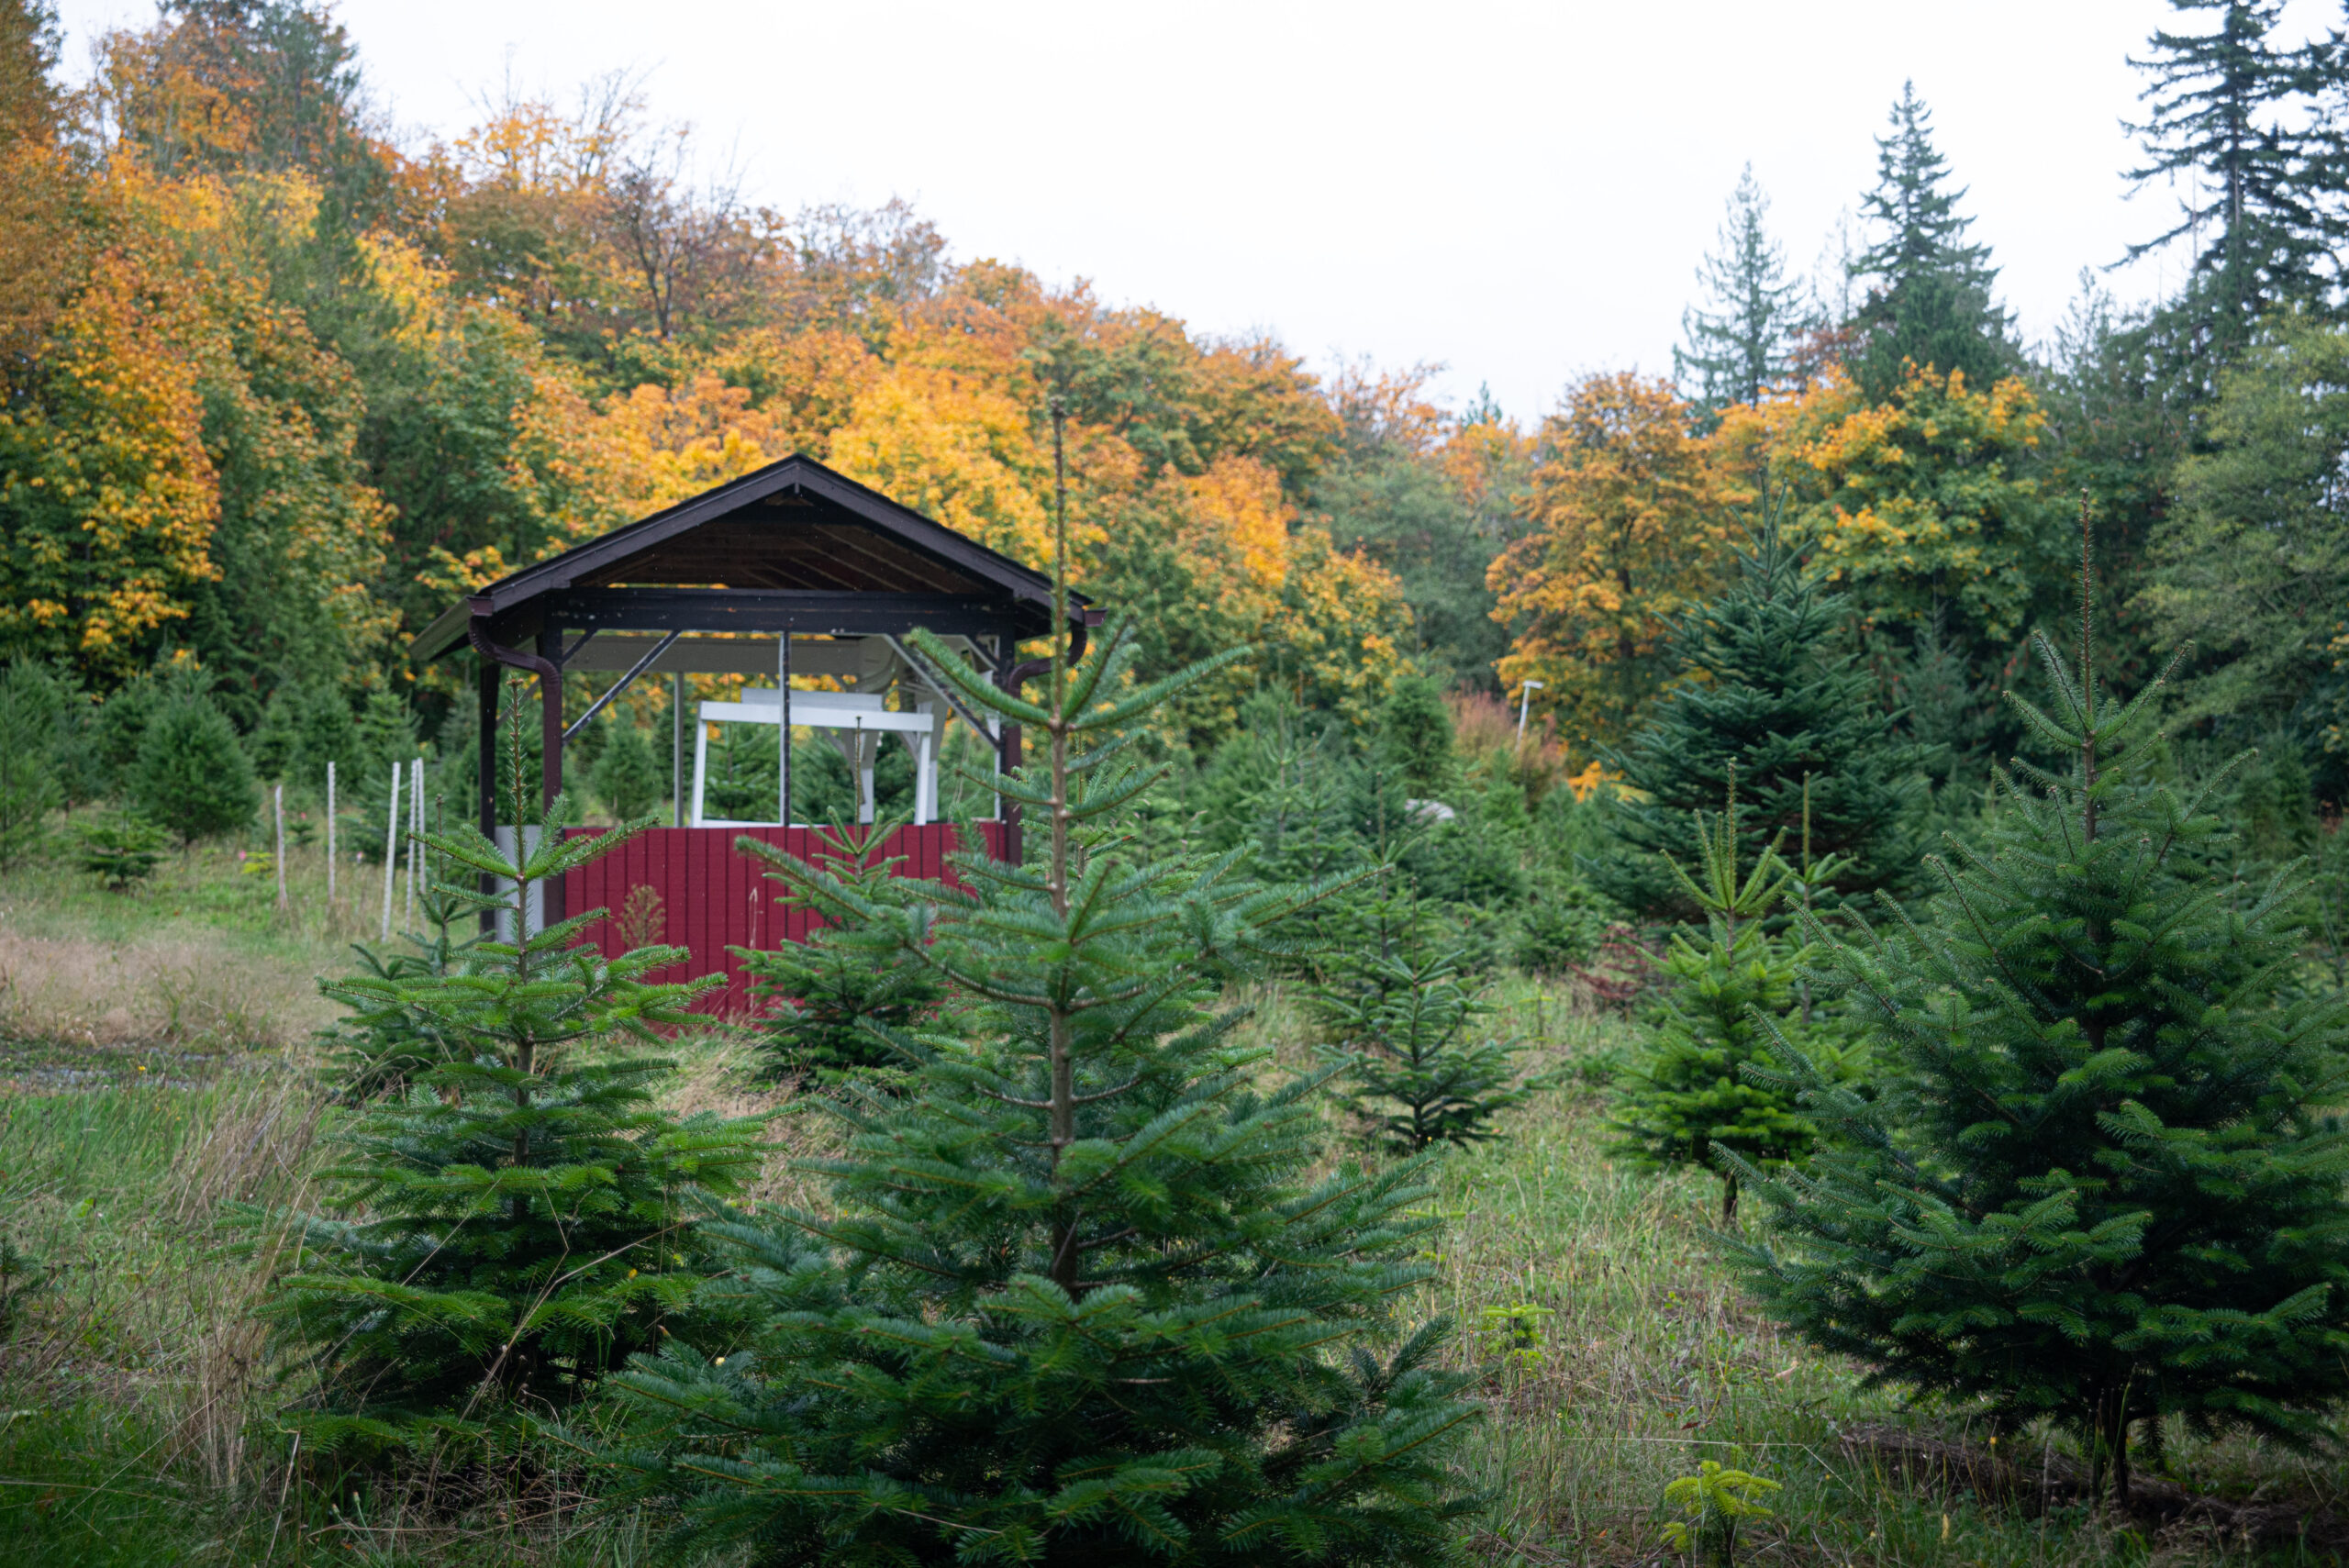 Christmas tree farm, Skagit Valley